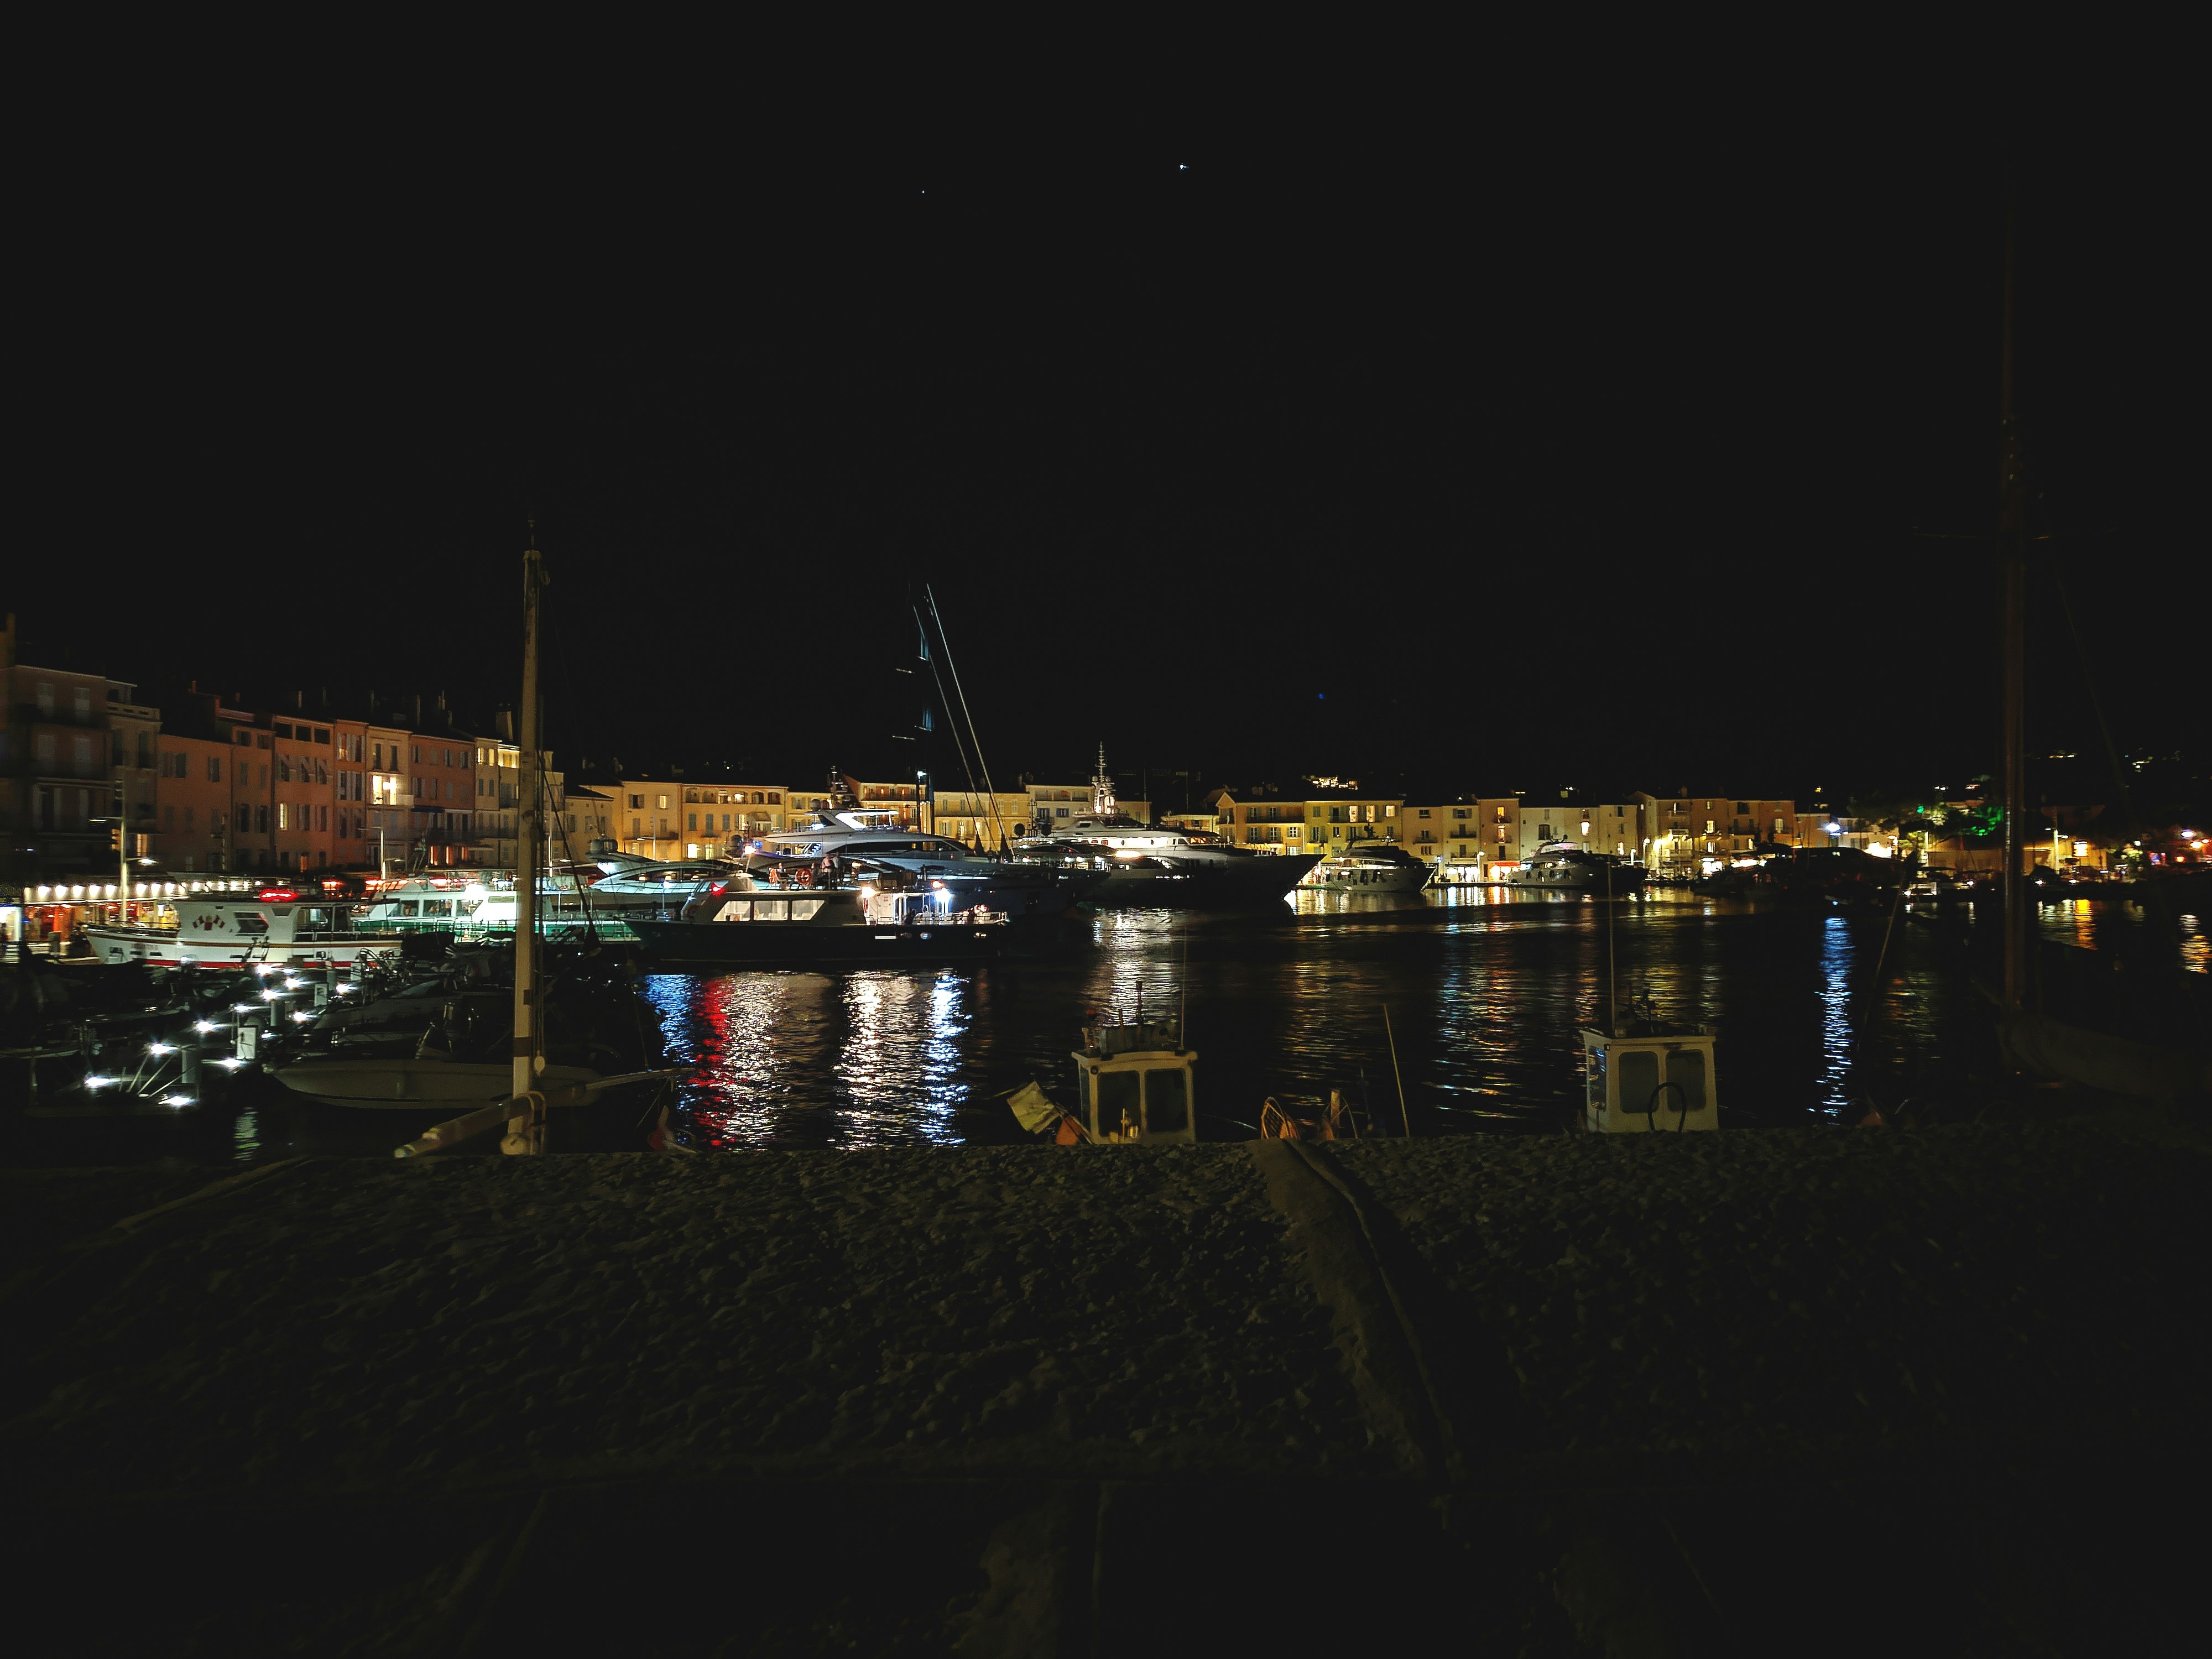 Port de Saint-Tropez at night